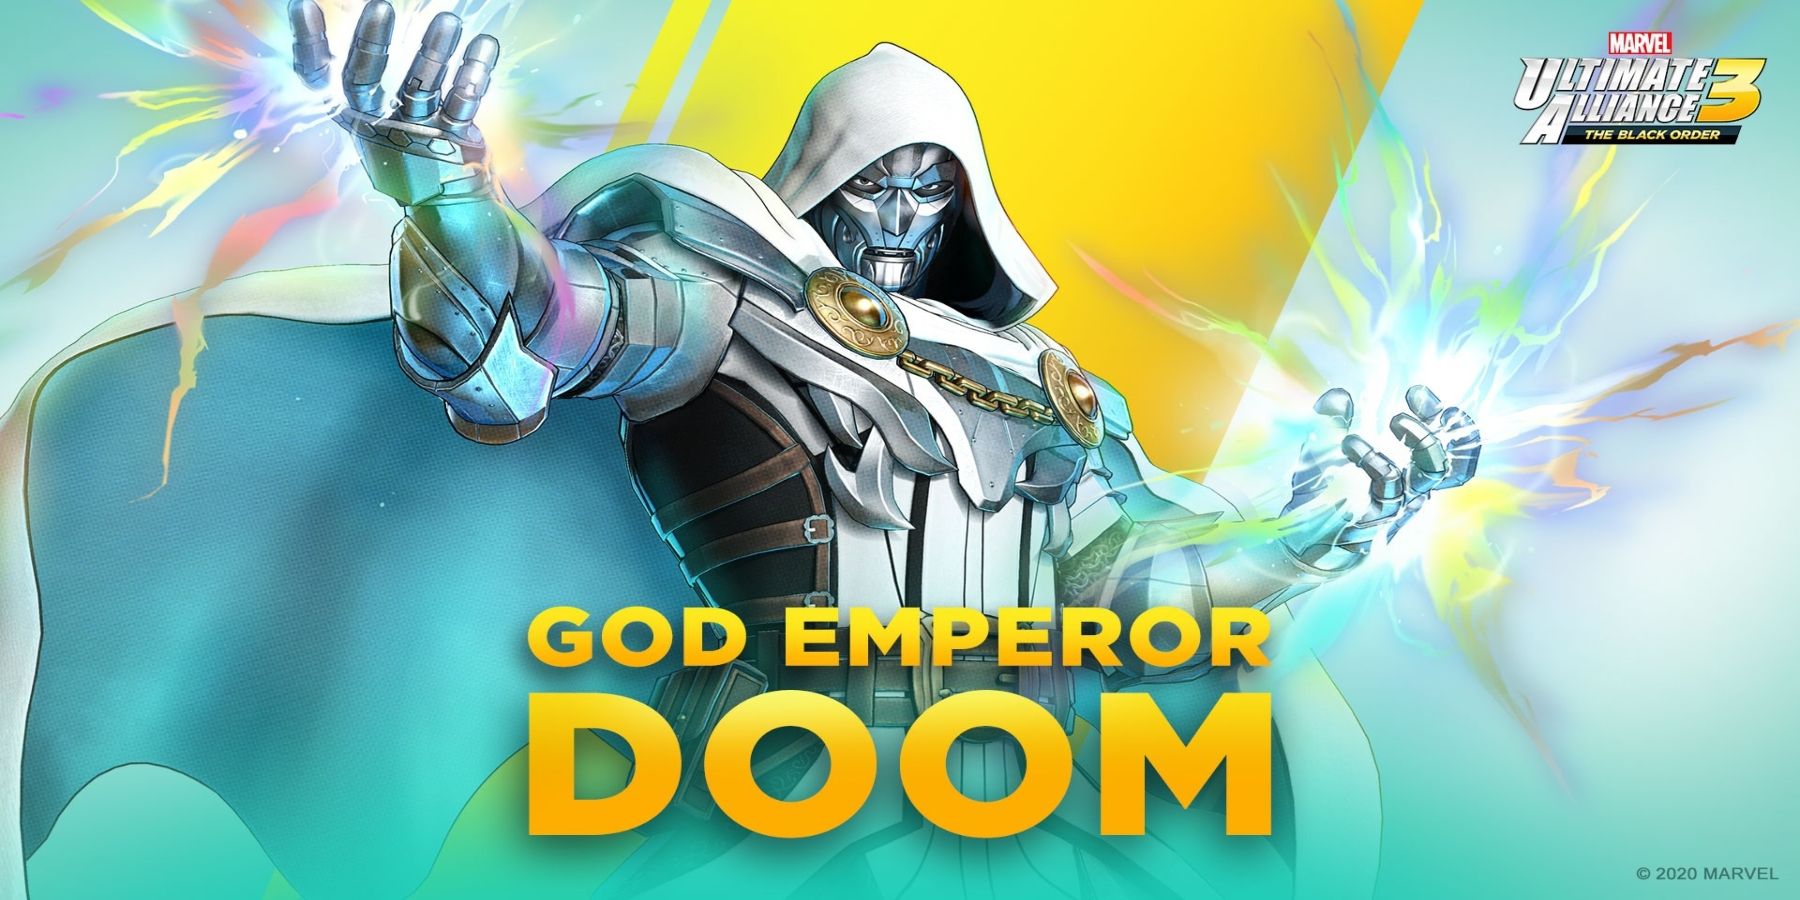 Doctor-Doom-God-Emperor-Marvel-Ultimate-Alliance-3